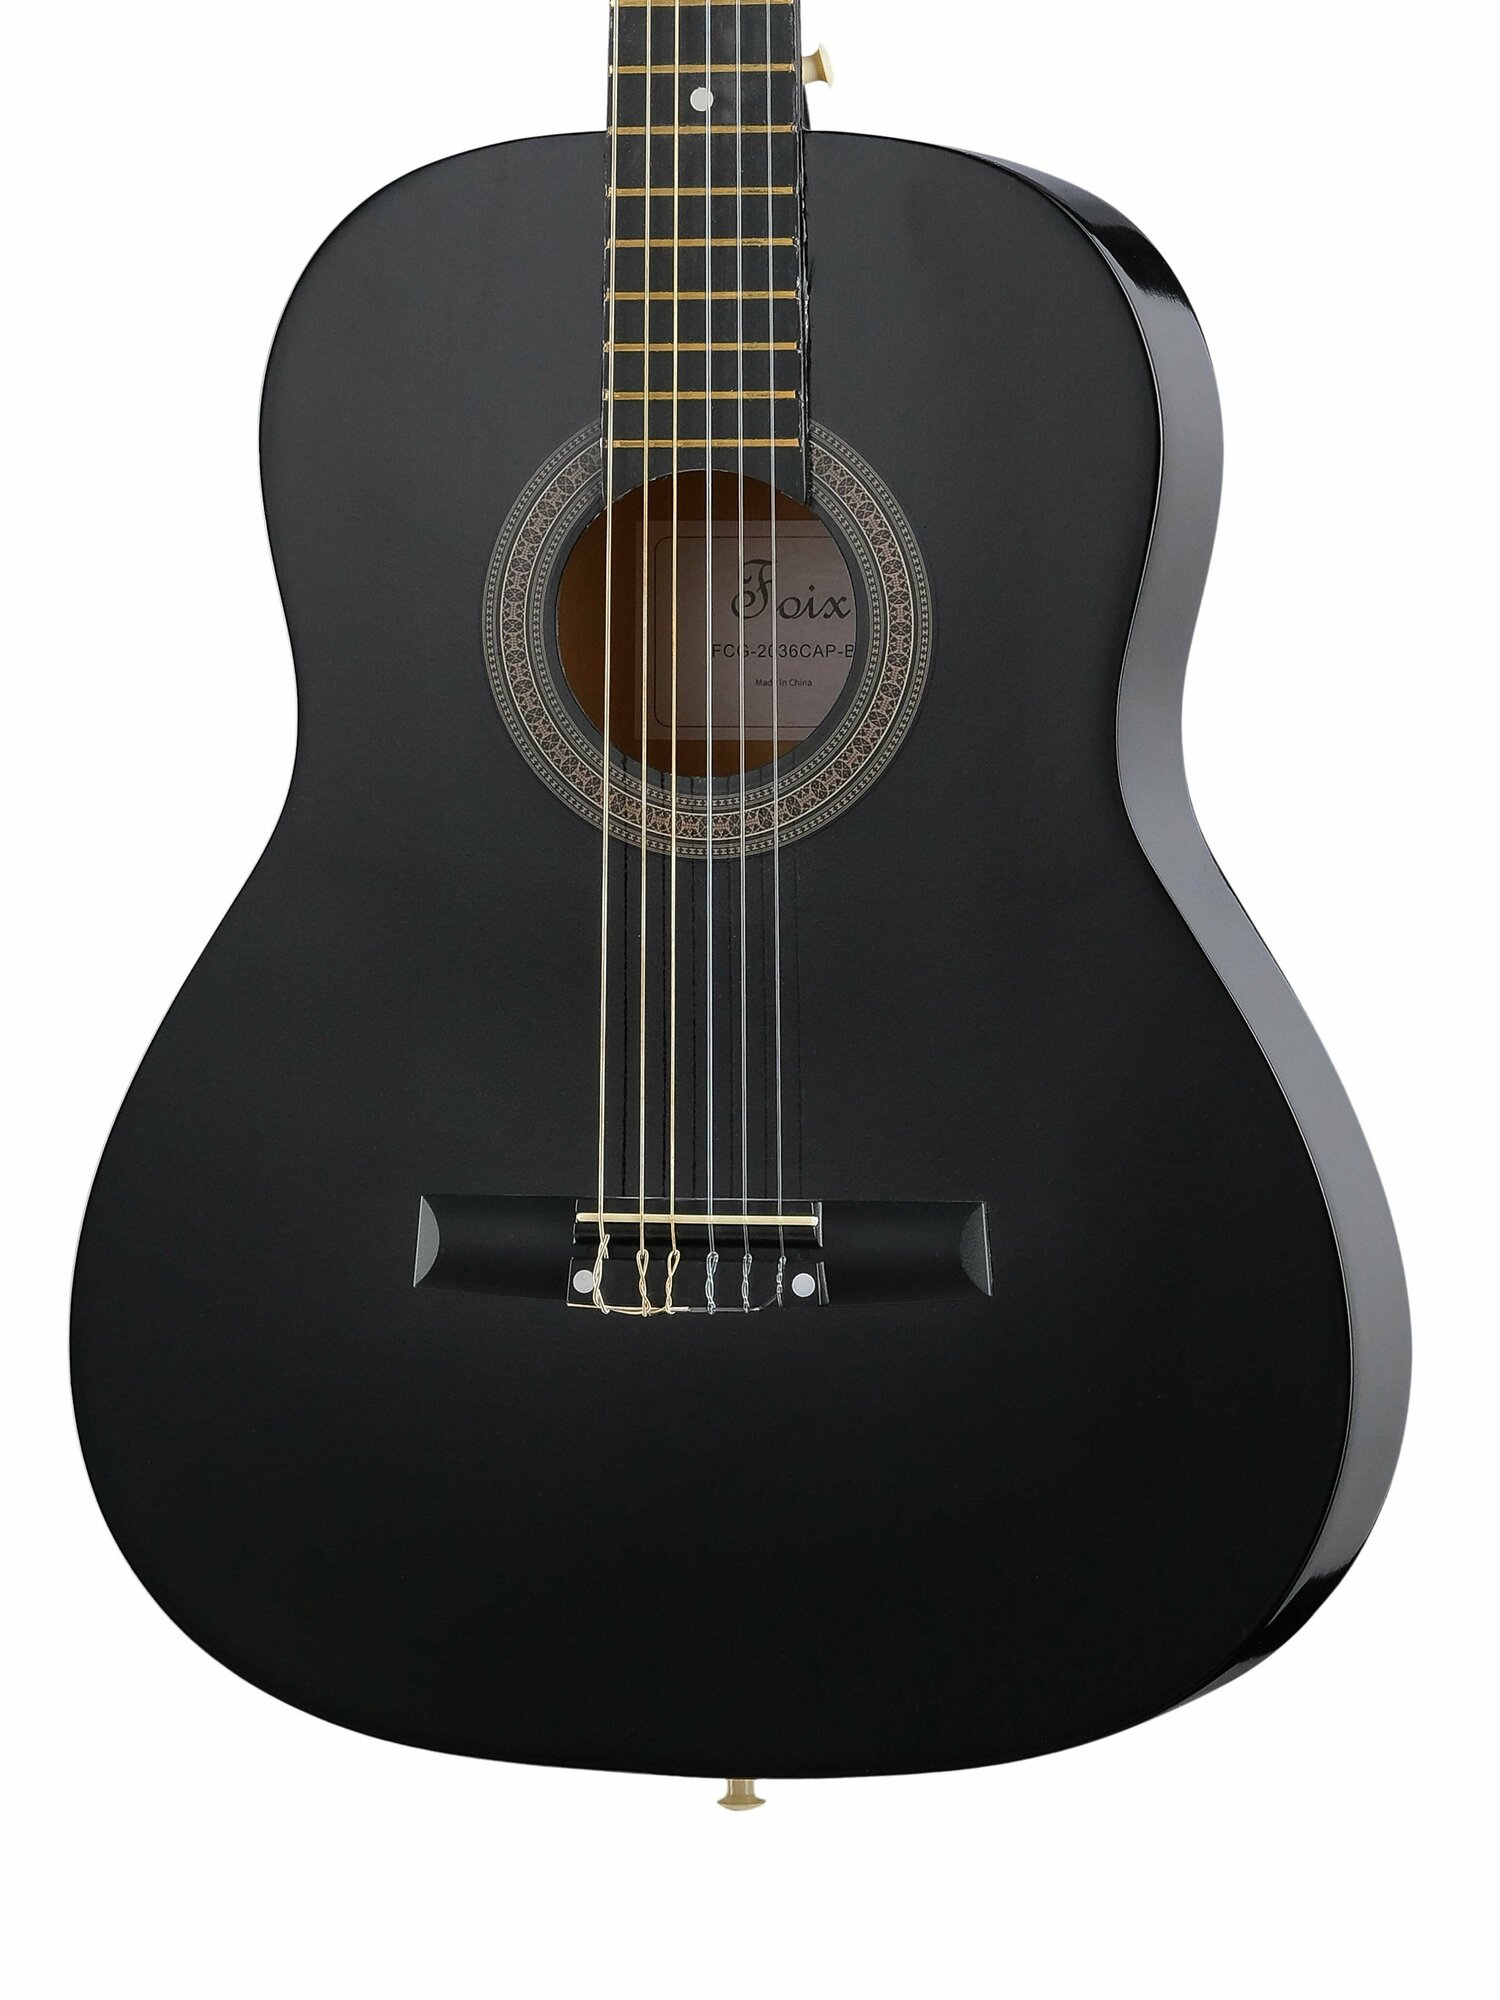 Классическая гитара 3/4 с чехлом, ремнем, тюнером, черная, Foix FCG-2036CAP-BK-3/4